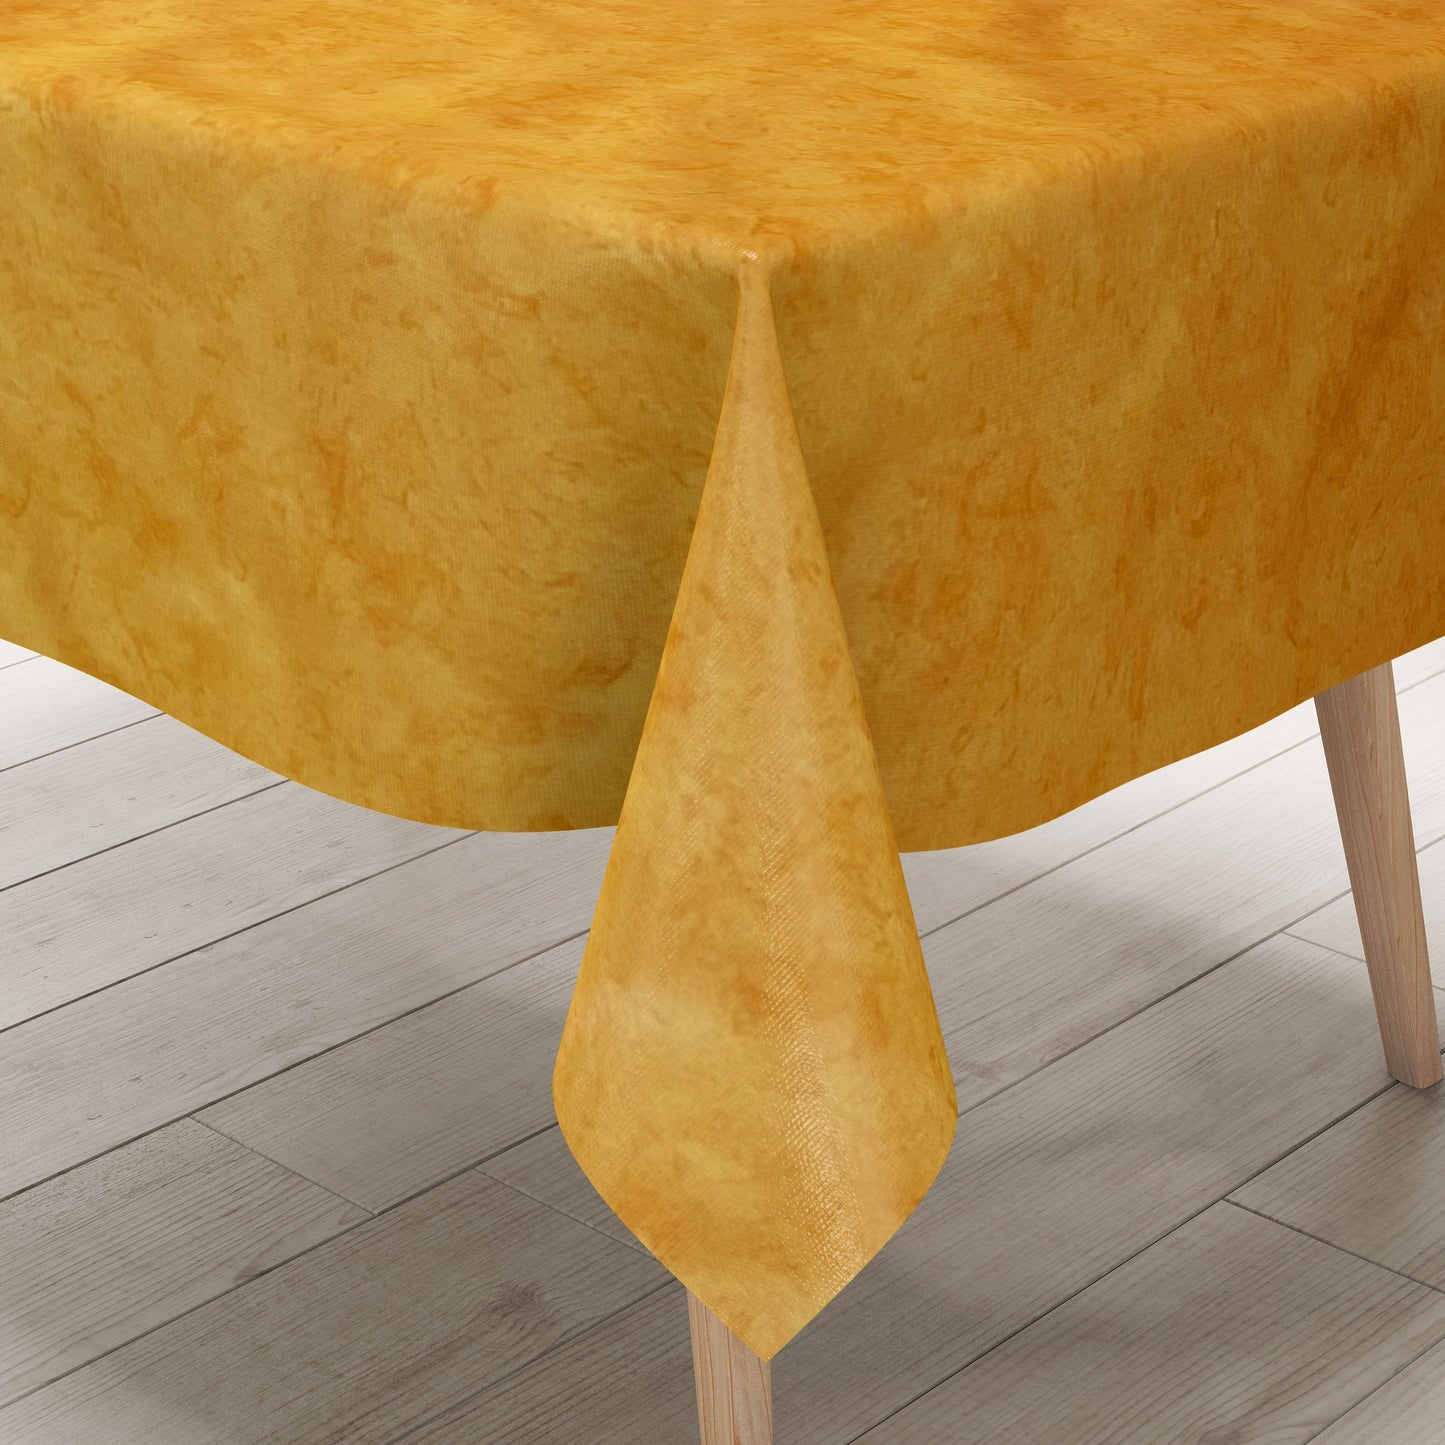 marmoriert eckig – Wachstuch gelb C142604 Tischdecke oval orange rund